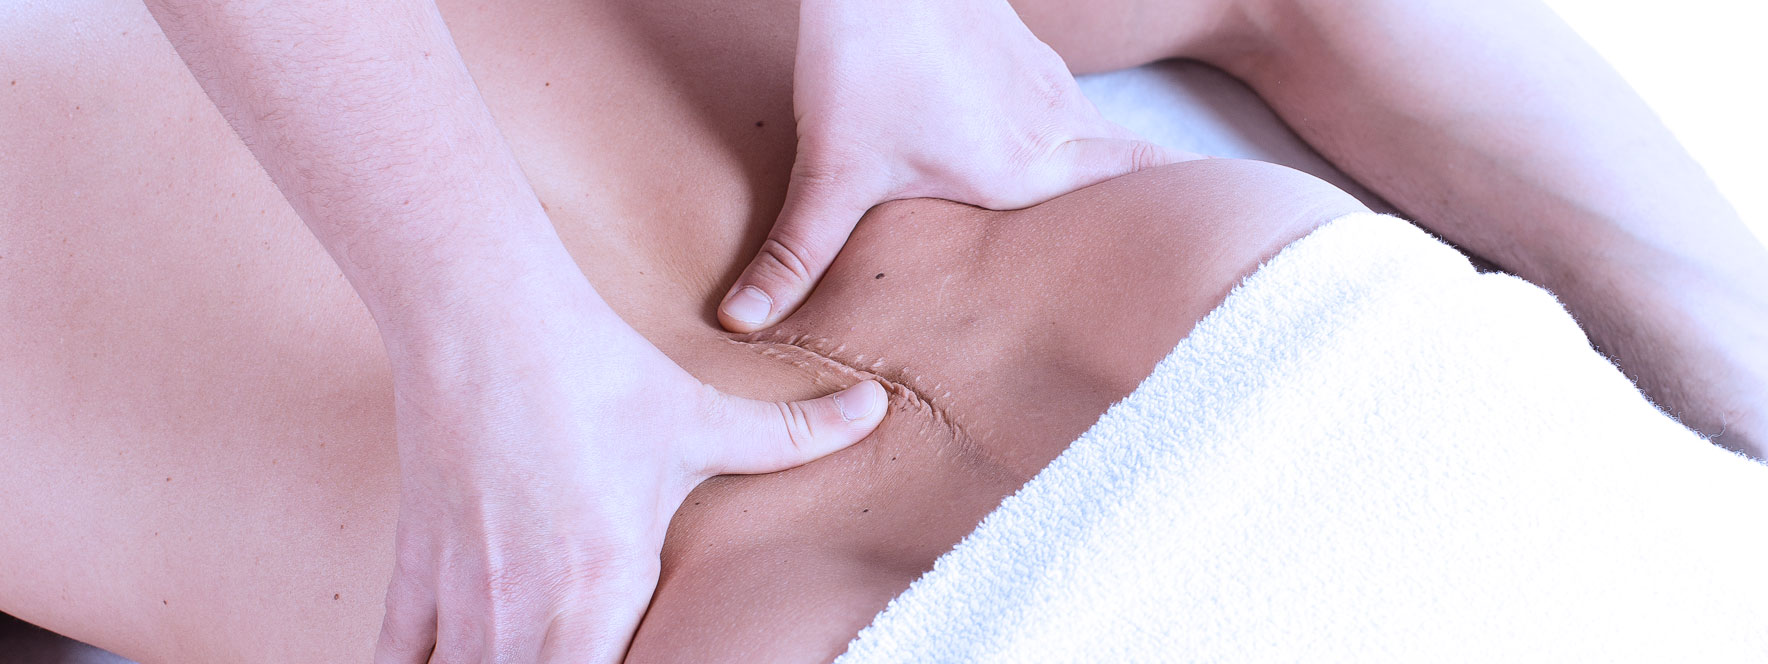 Le massage des cicatrices après chirurgie | Le Réseau